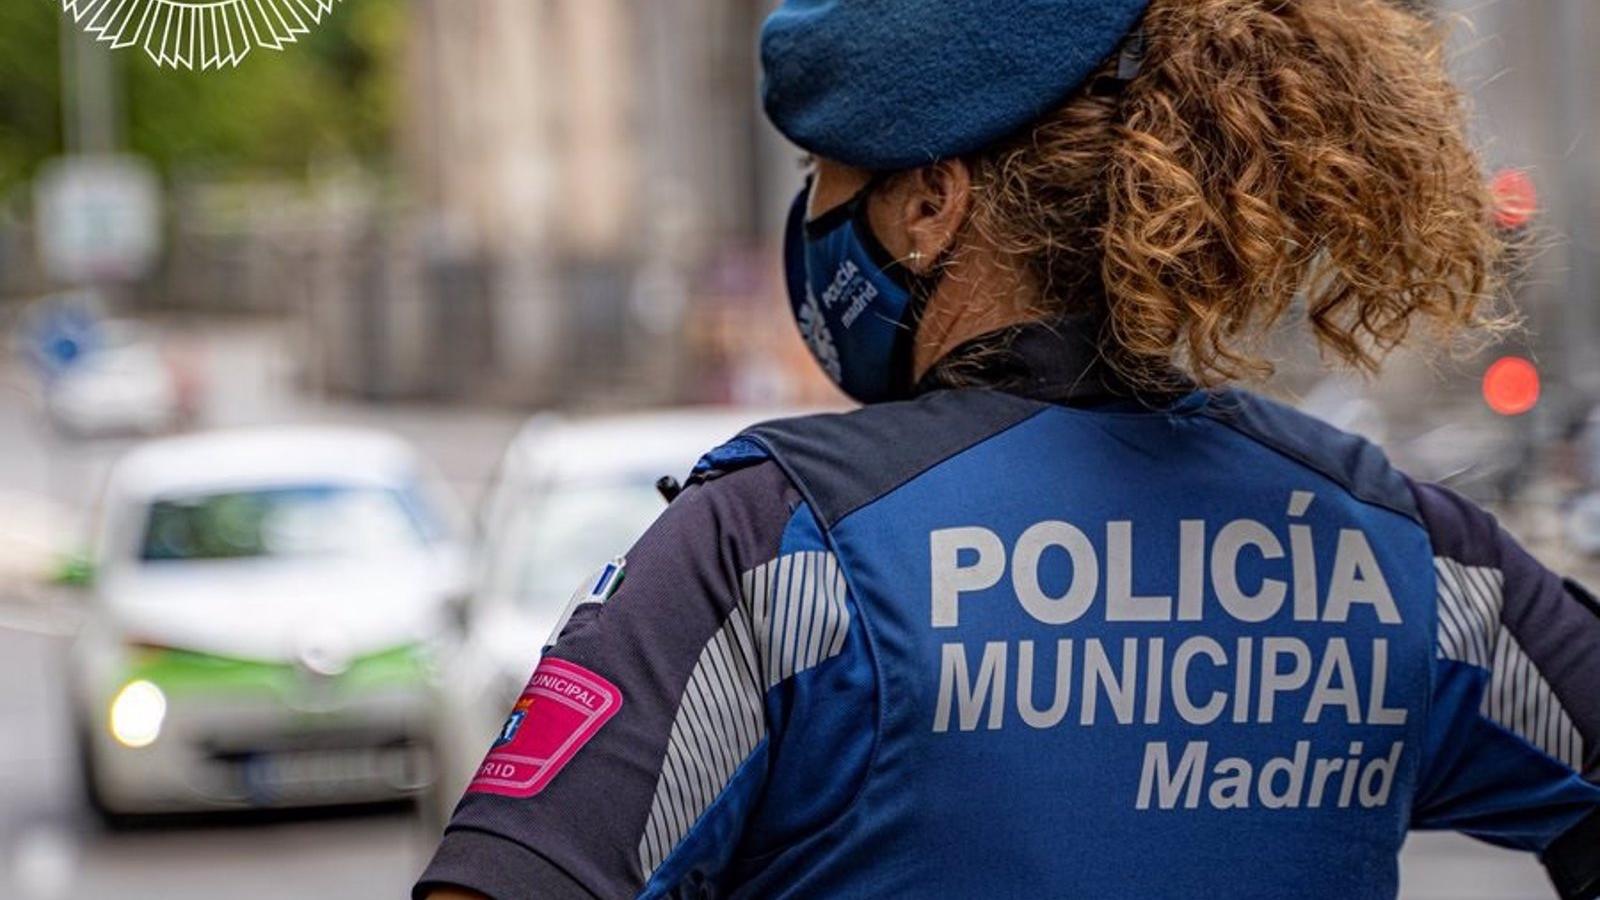 Los nuevos uniformes de Policía Municipal de Madrid serán de un azul más oscuro y lucirán las banderas de España y de la Comunidad